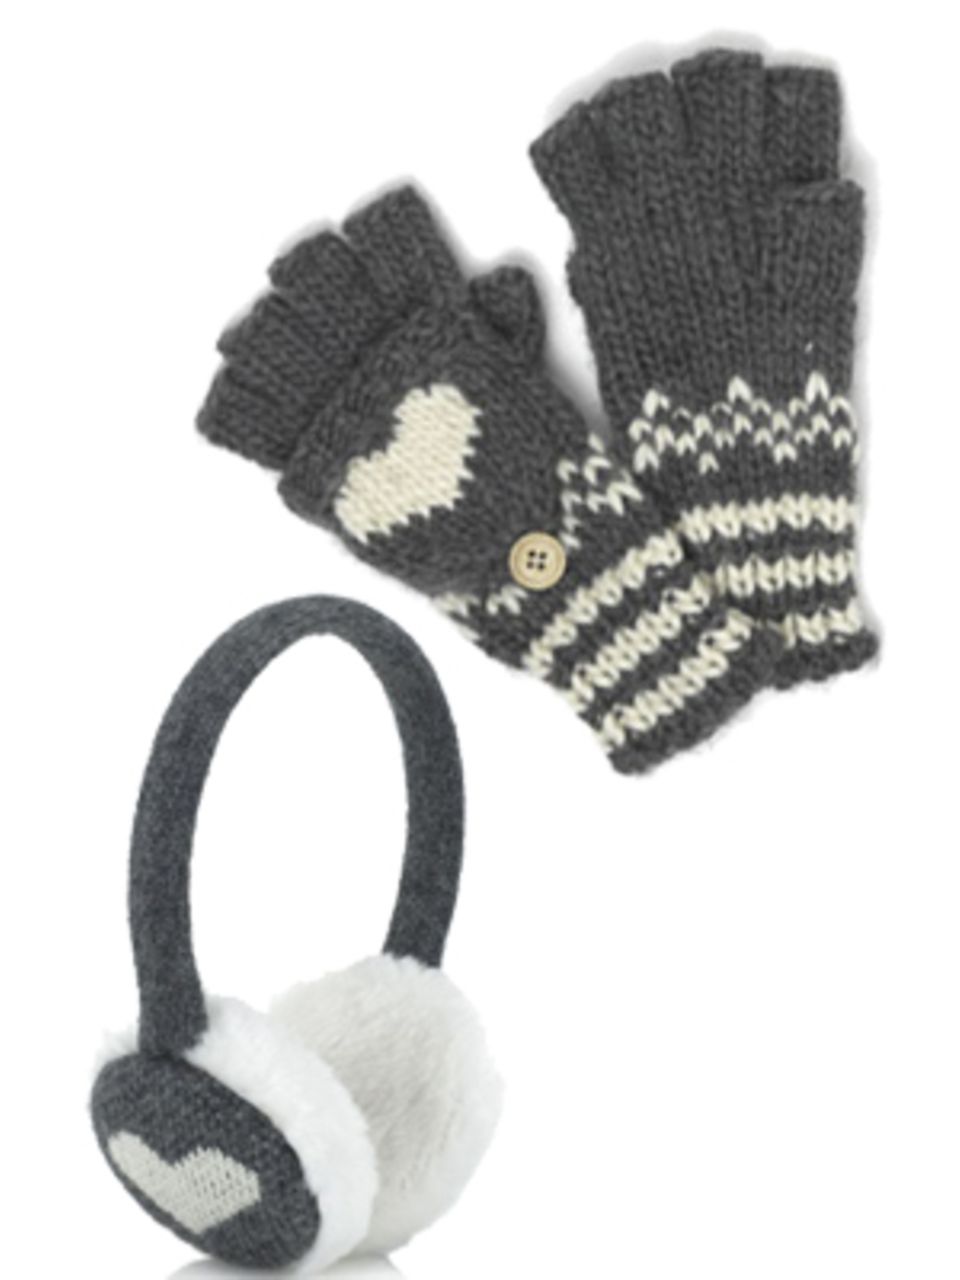 Flauschige Ohrenschützer und Fingerling-Handschuhe mit Herzmotiv von Accessorize. Ohrenschützer um 18 Euro, Handschuhe um 12 Euro.